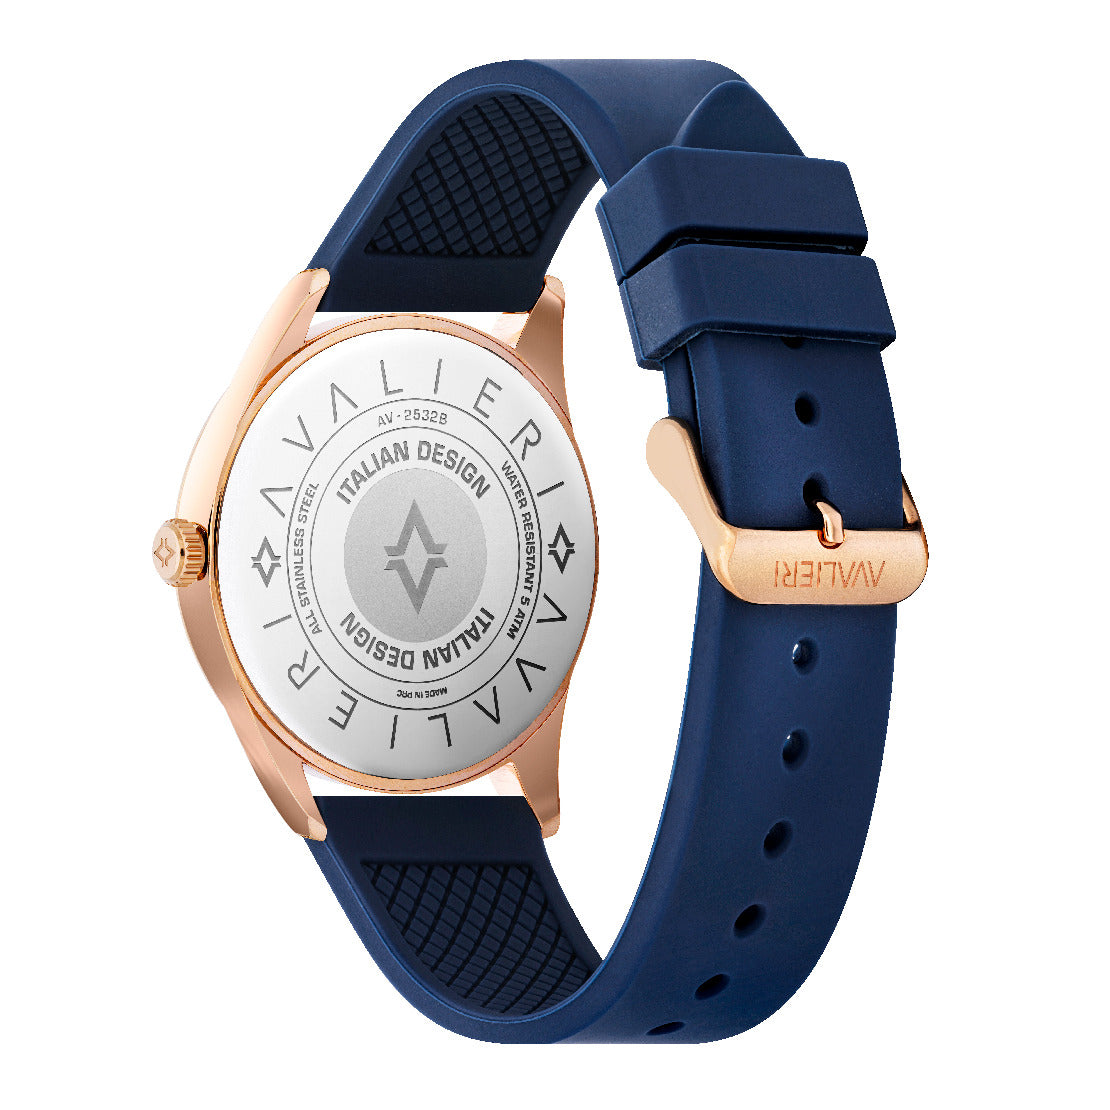 Avalieri Men's Quartz Watch, White Dial - AV-2532B